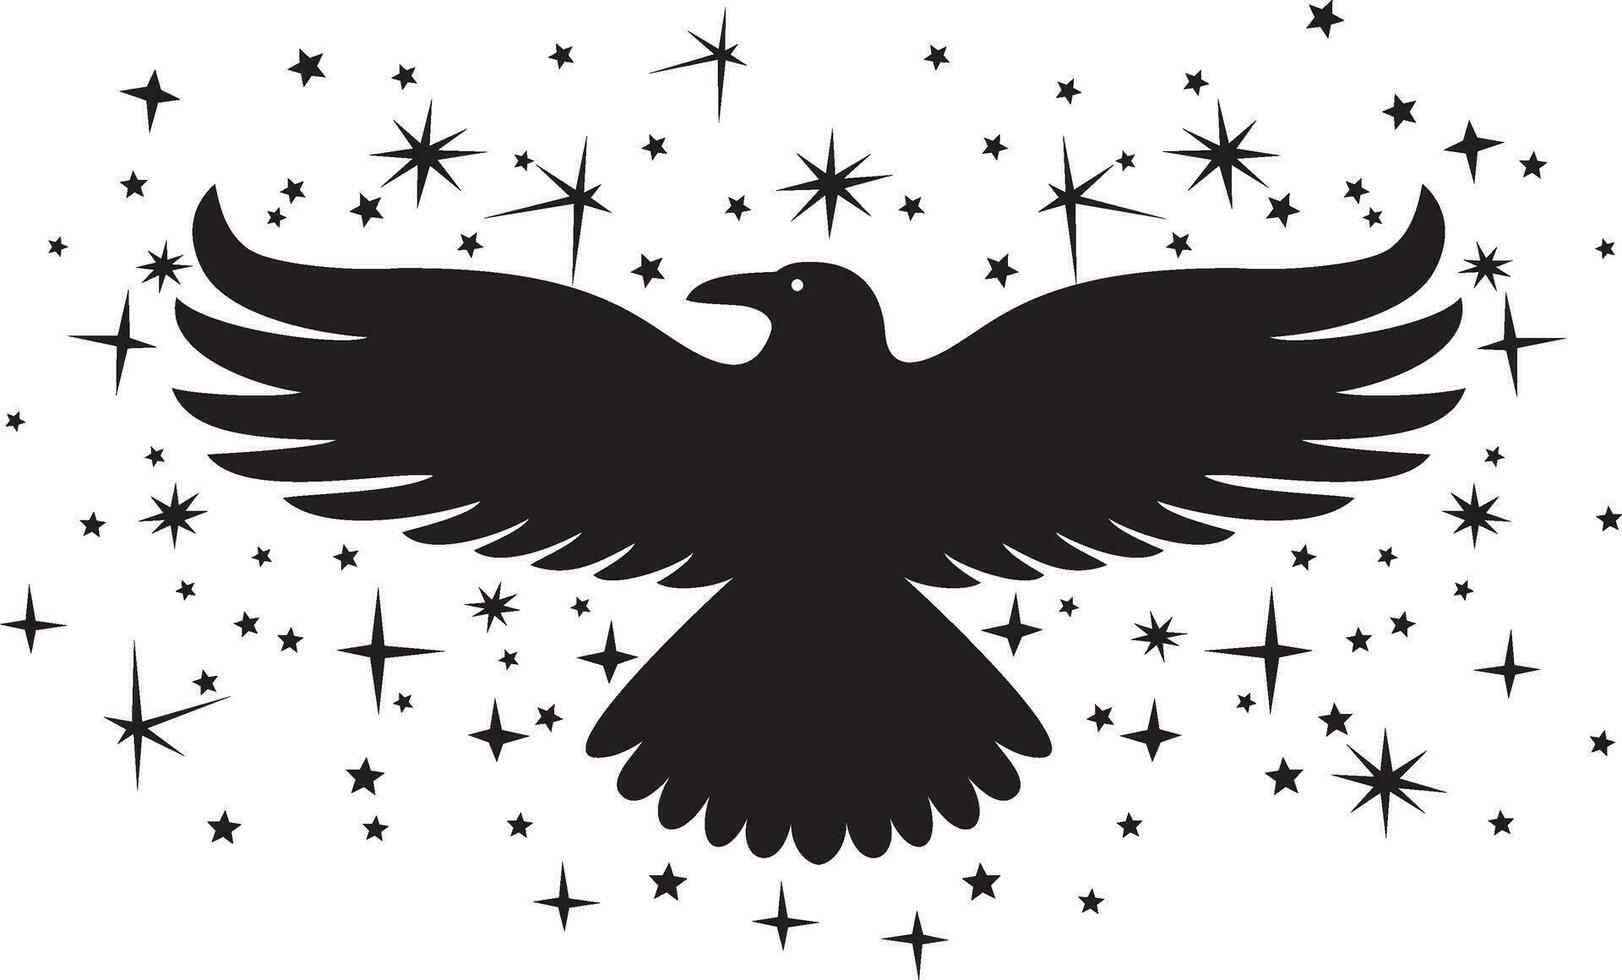 korp fågel med gnistor och stjärnor svart och vit. vektor illustration.